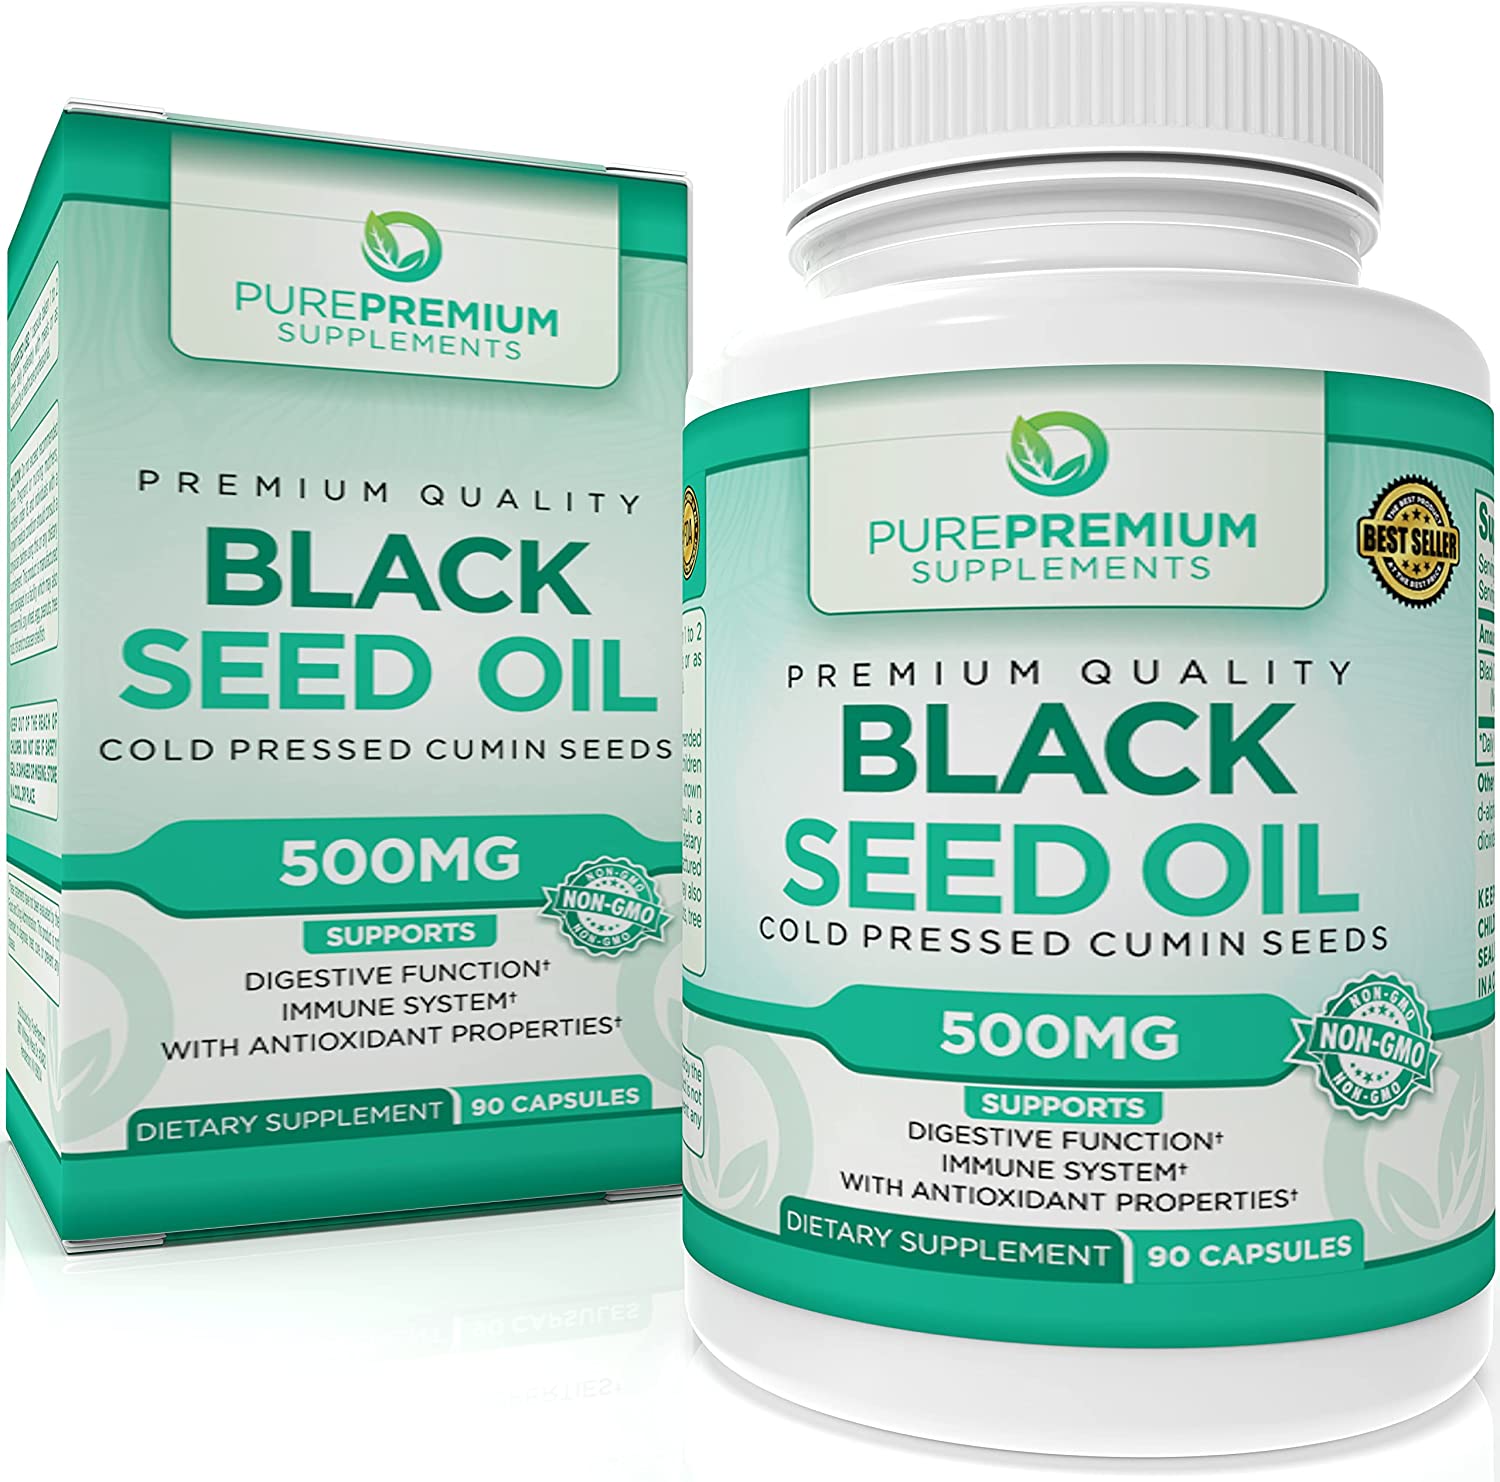 PurePremium Digestive Function Black Cumin Seed Oil Capsules